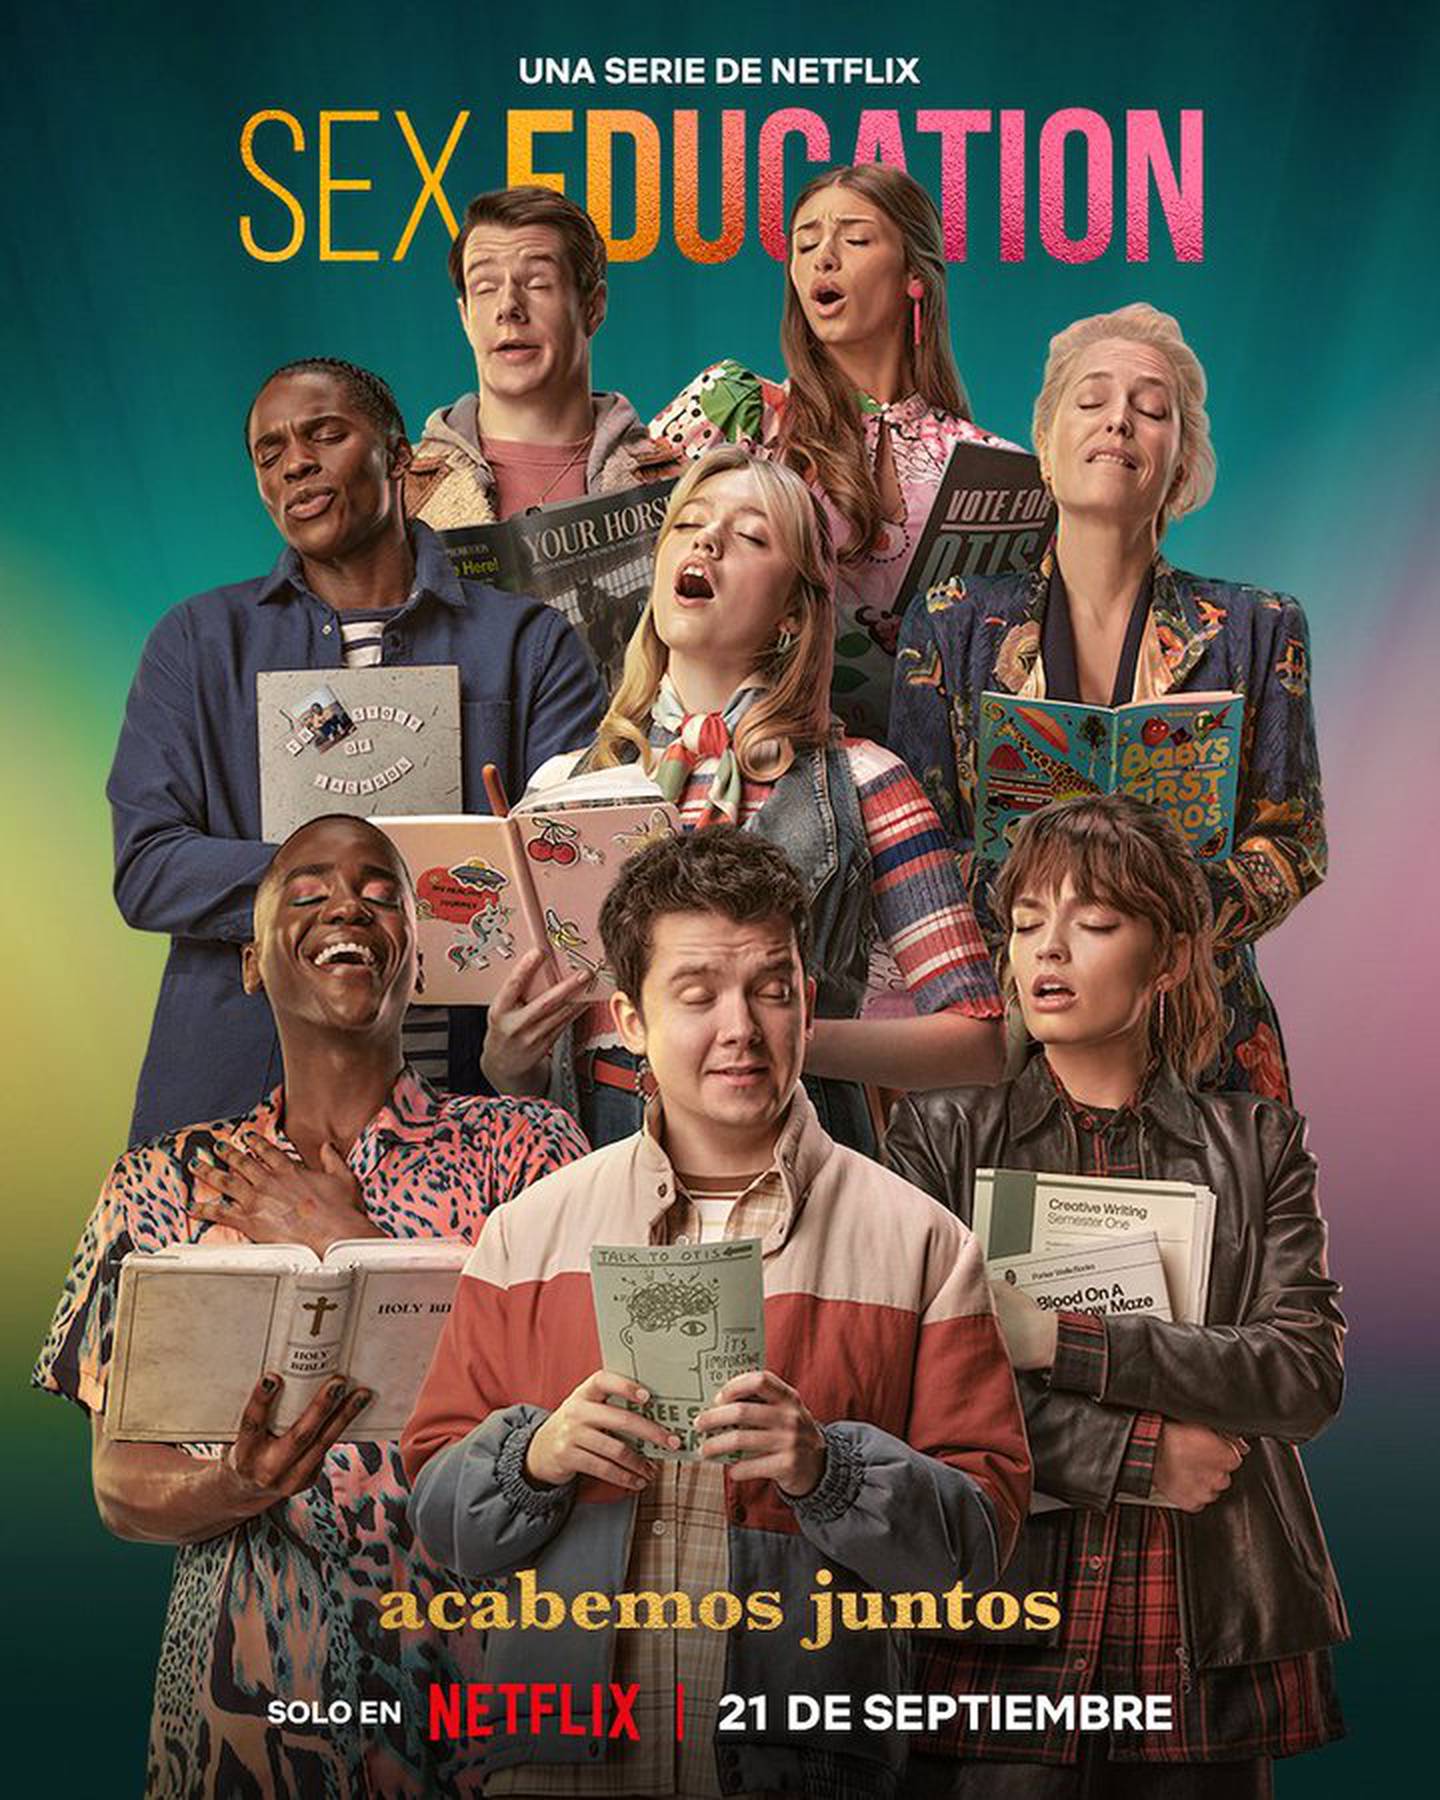 La serie 'Sex Education' presentará viejos y nuevos personajes en su última temporada.  Otis y sus amigos van a una nueva escuela y eso representa para ellos muchos retos.